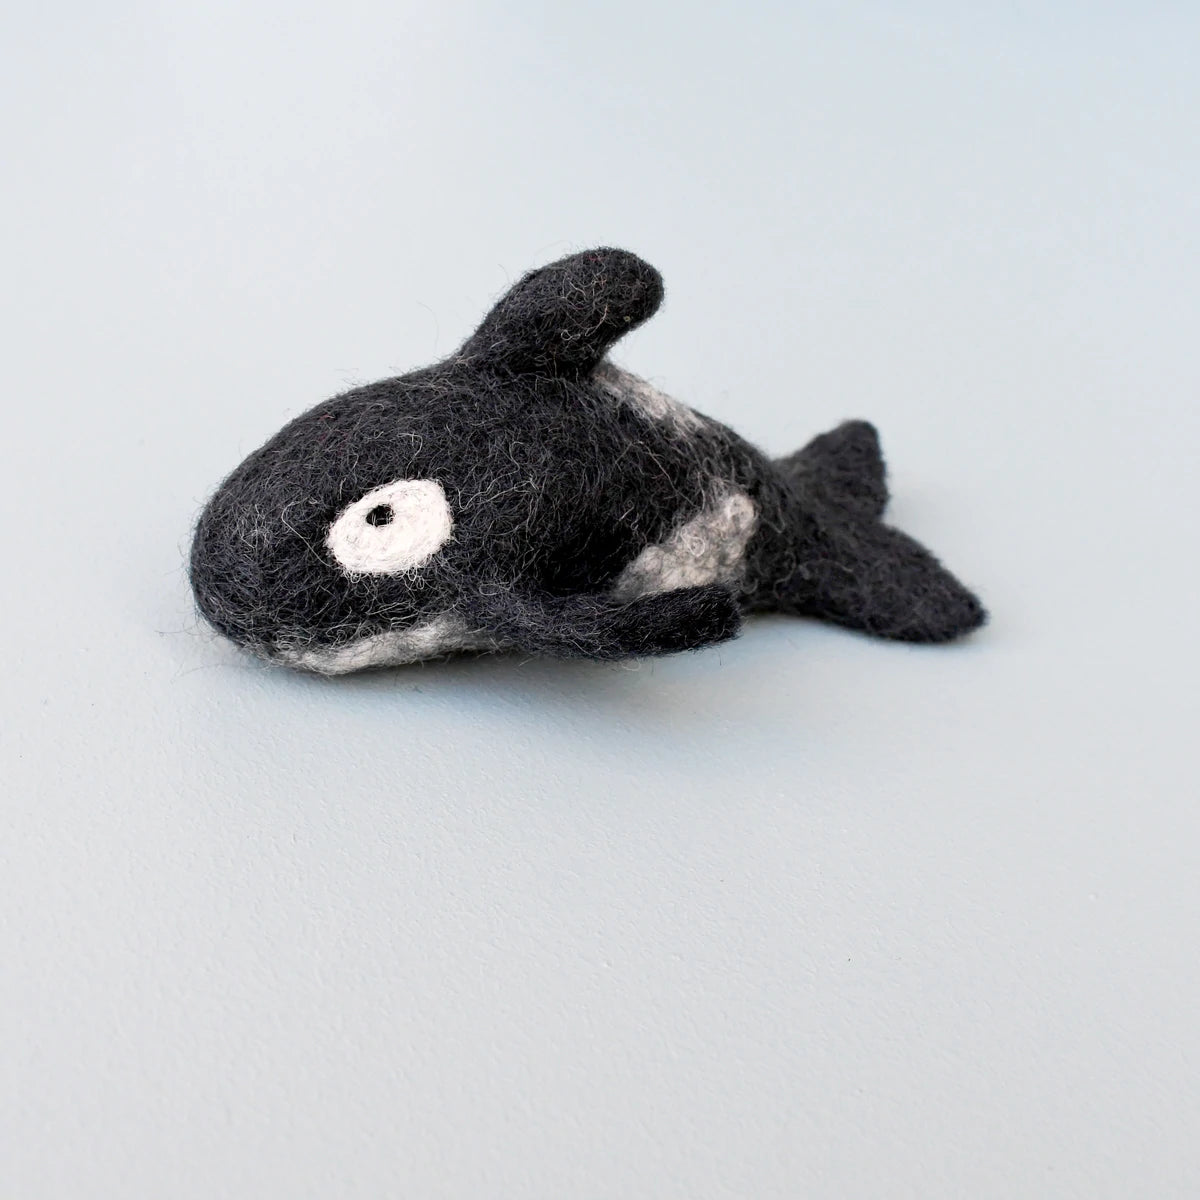 Felt Orca Killer Whale Toy